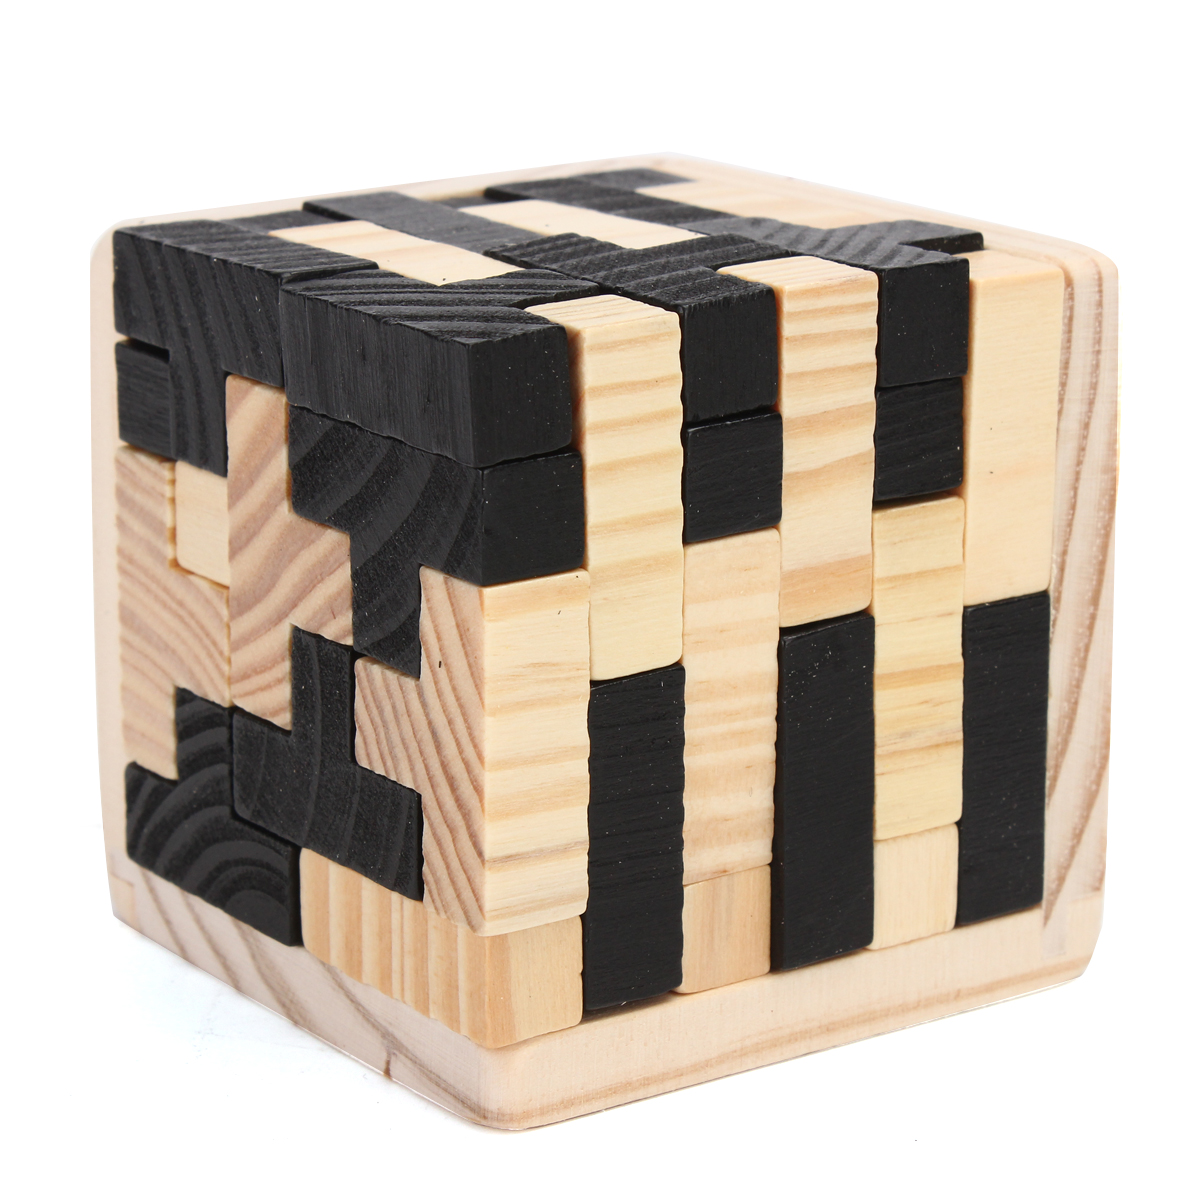 

54Pcs Wood Волшебный Интеллектуальная игра 3D Wood Puzzle Головоломка Волшебный Тетрис Cube